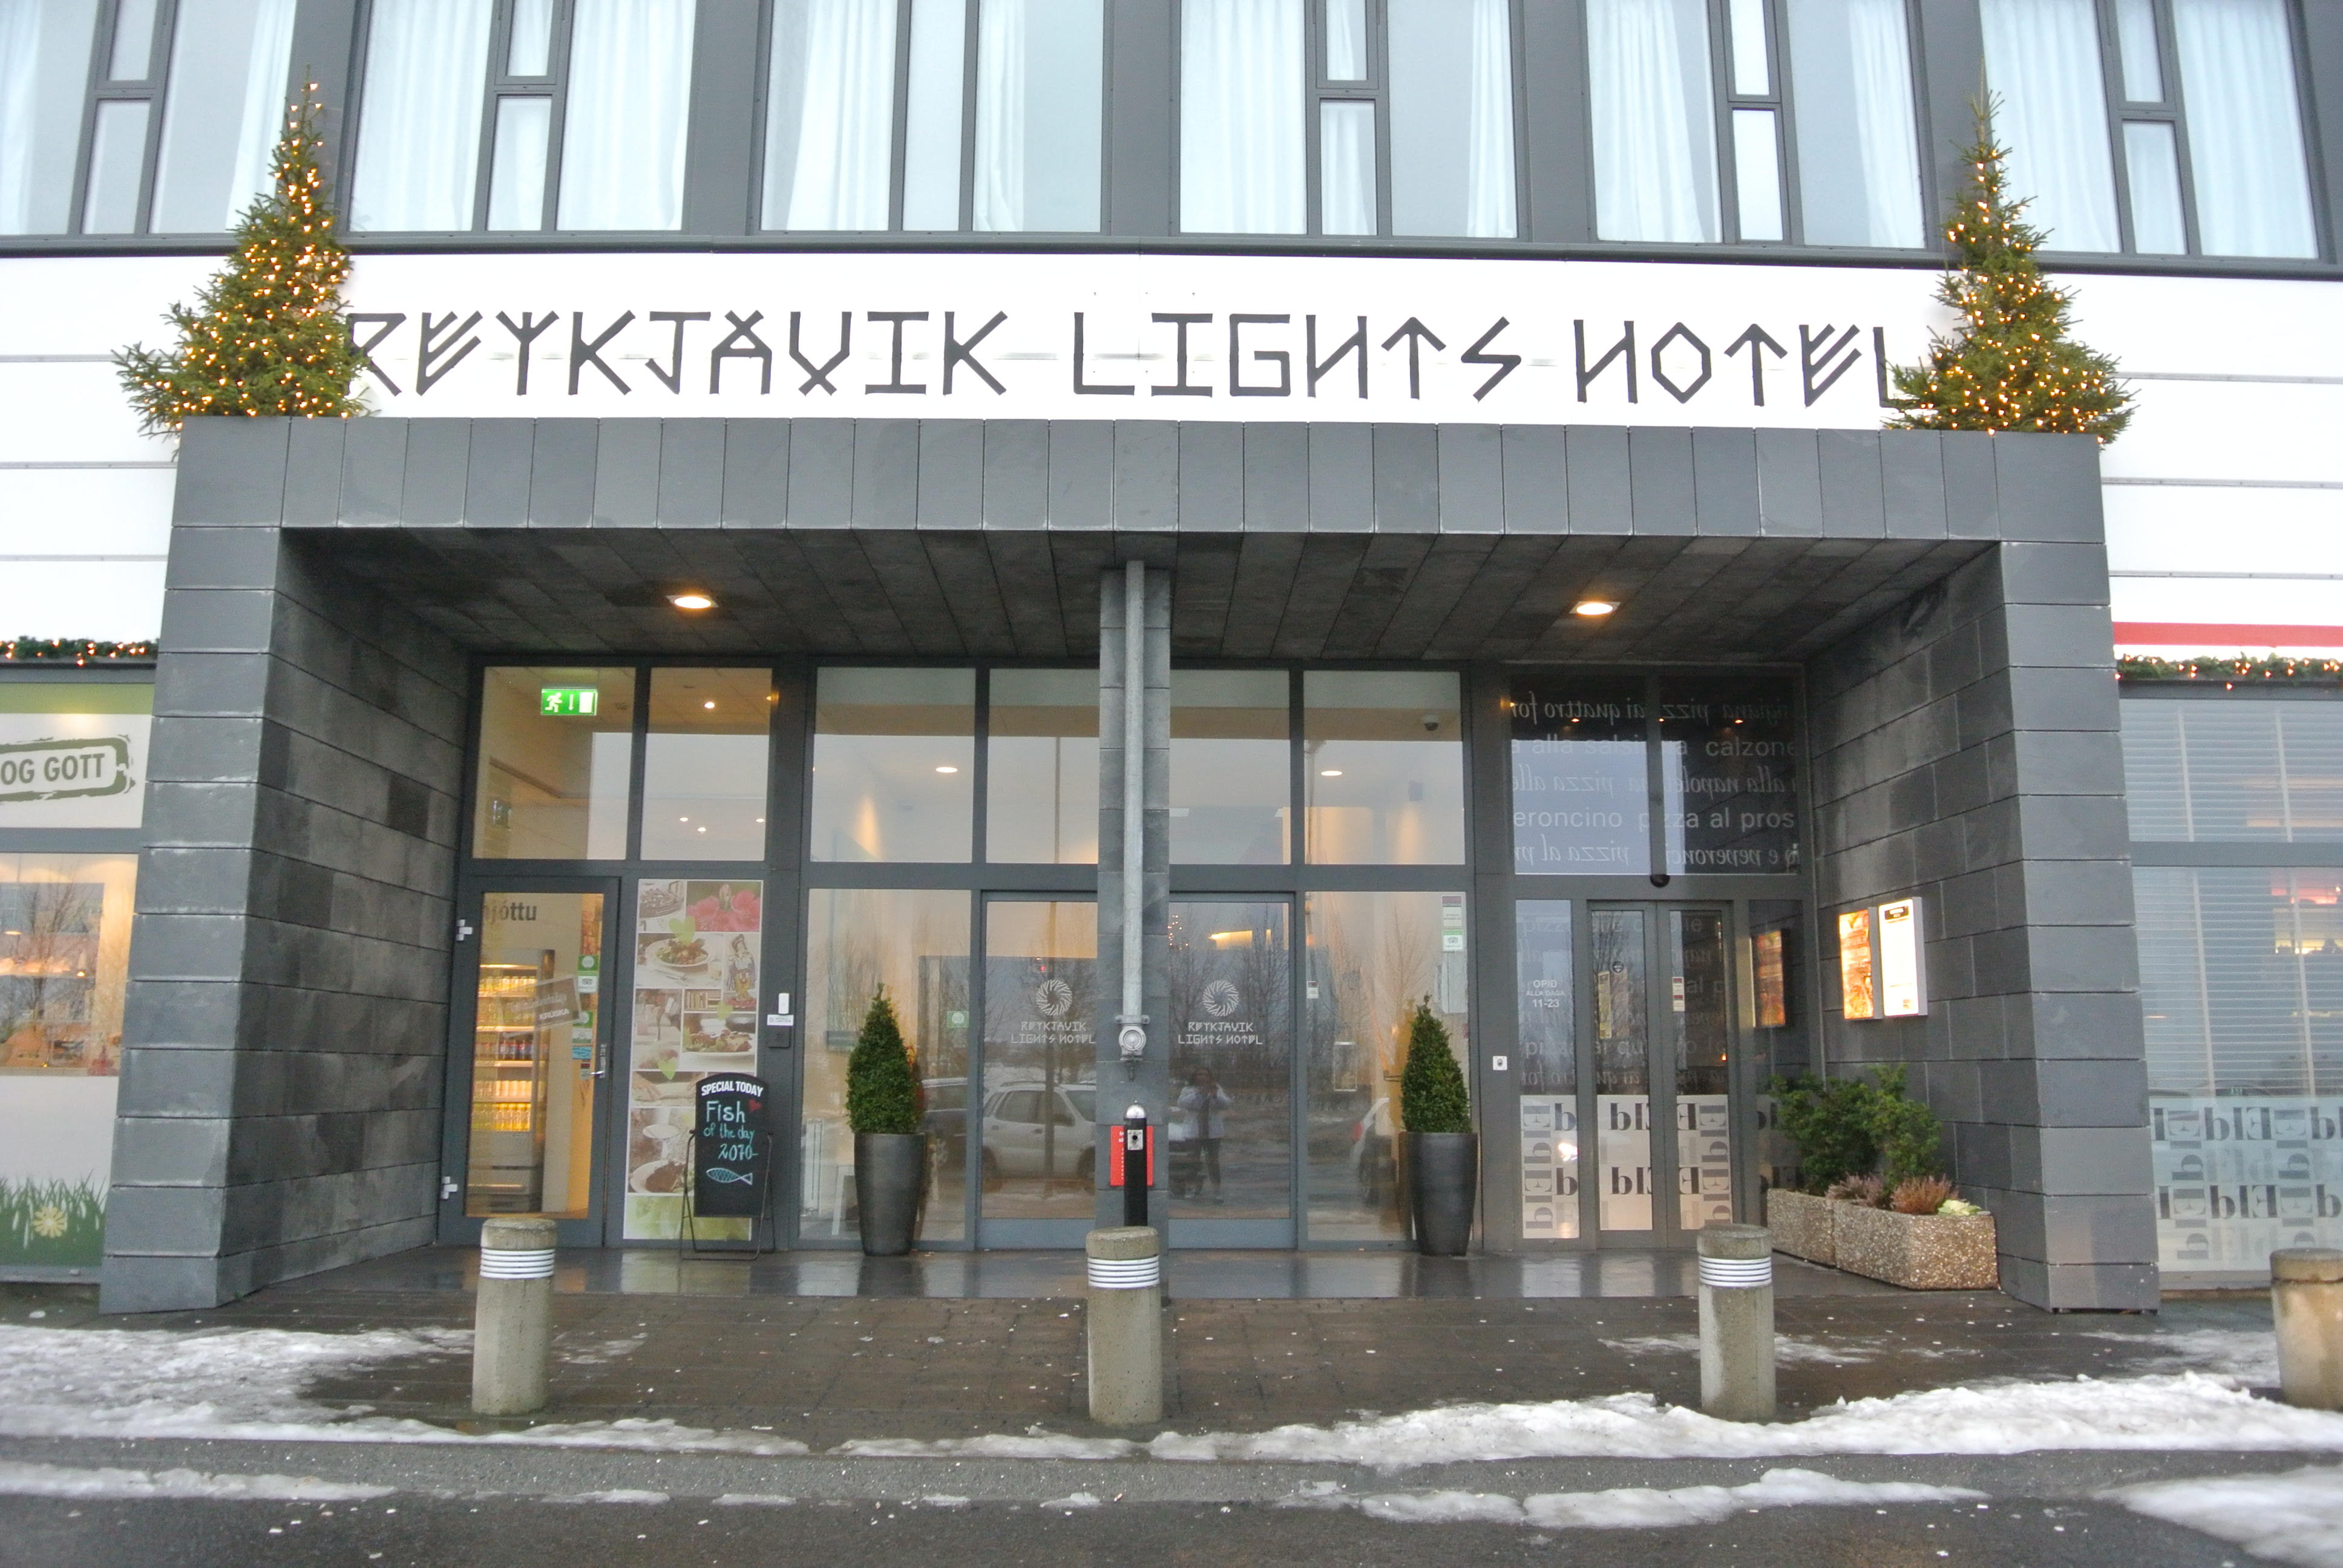 Reykjavik Lights Hotel